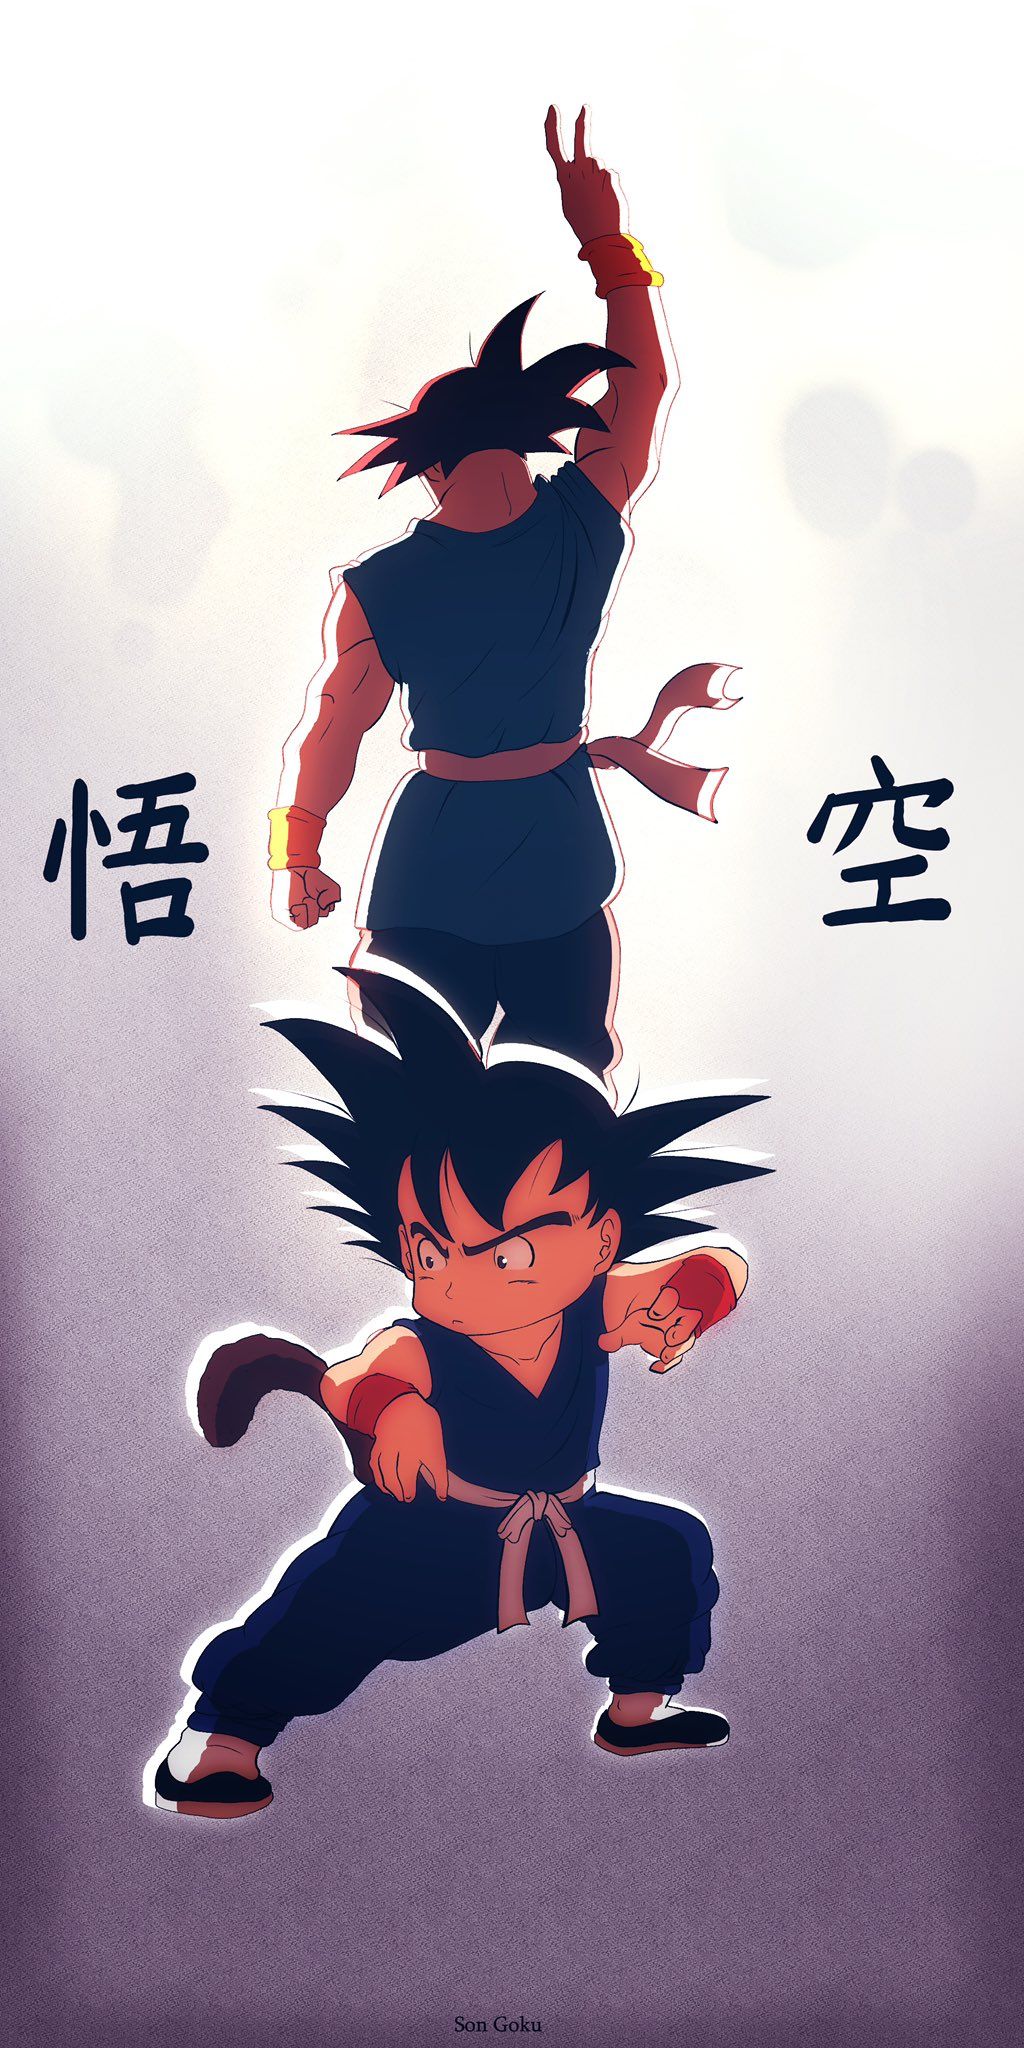  Son Goku Hintergrundbild 1024x2048. Renaldo draw on X: Son Goku. #GokuDay #DragonBall #DragonBallSuper #dragonballz #drawing #Fanarts #anime #Manga / X